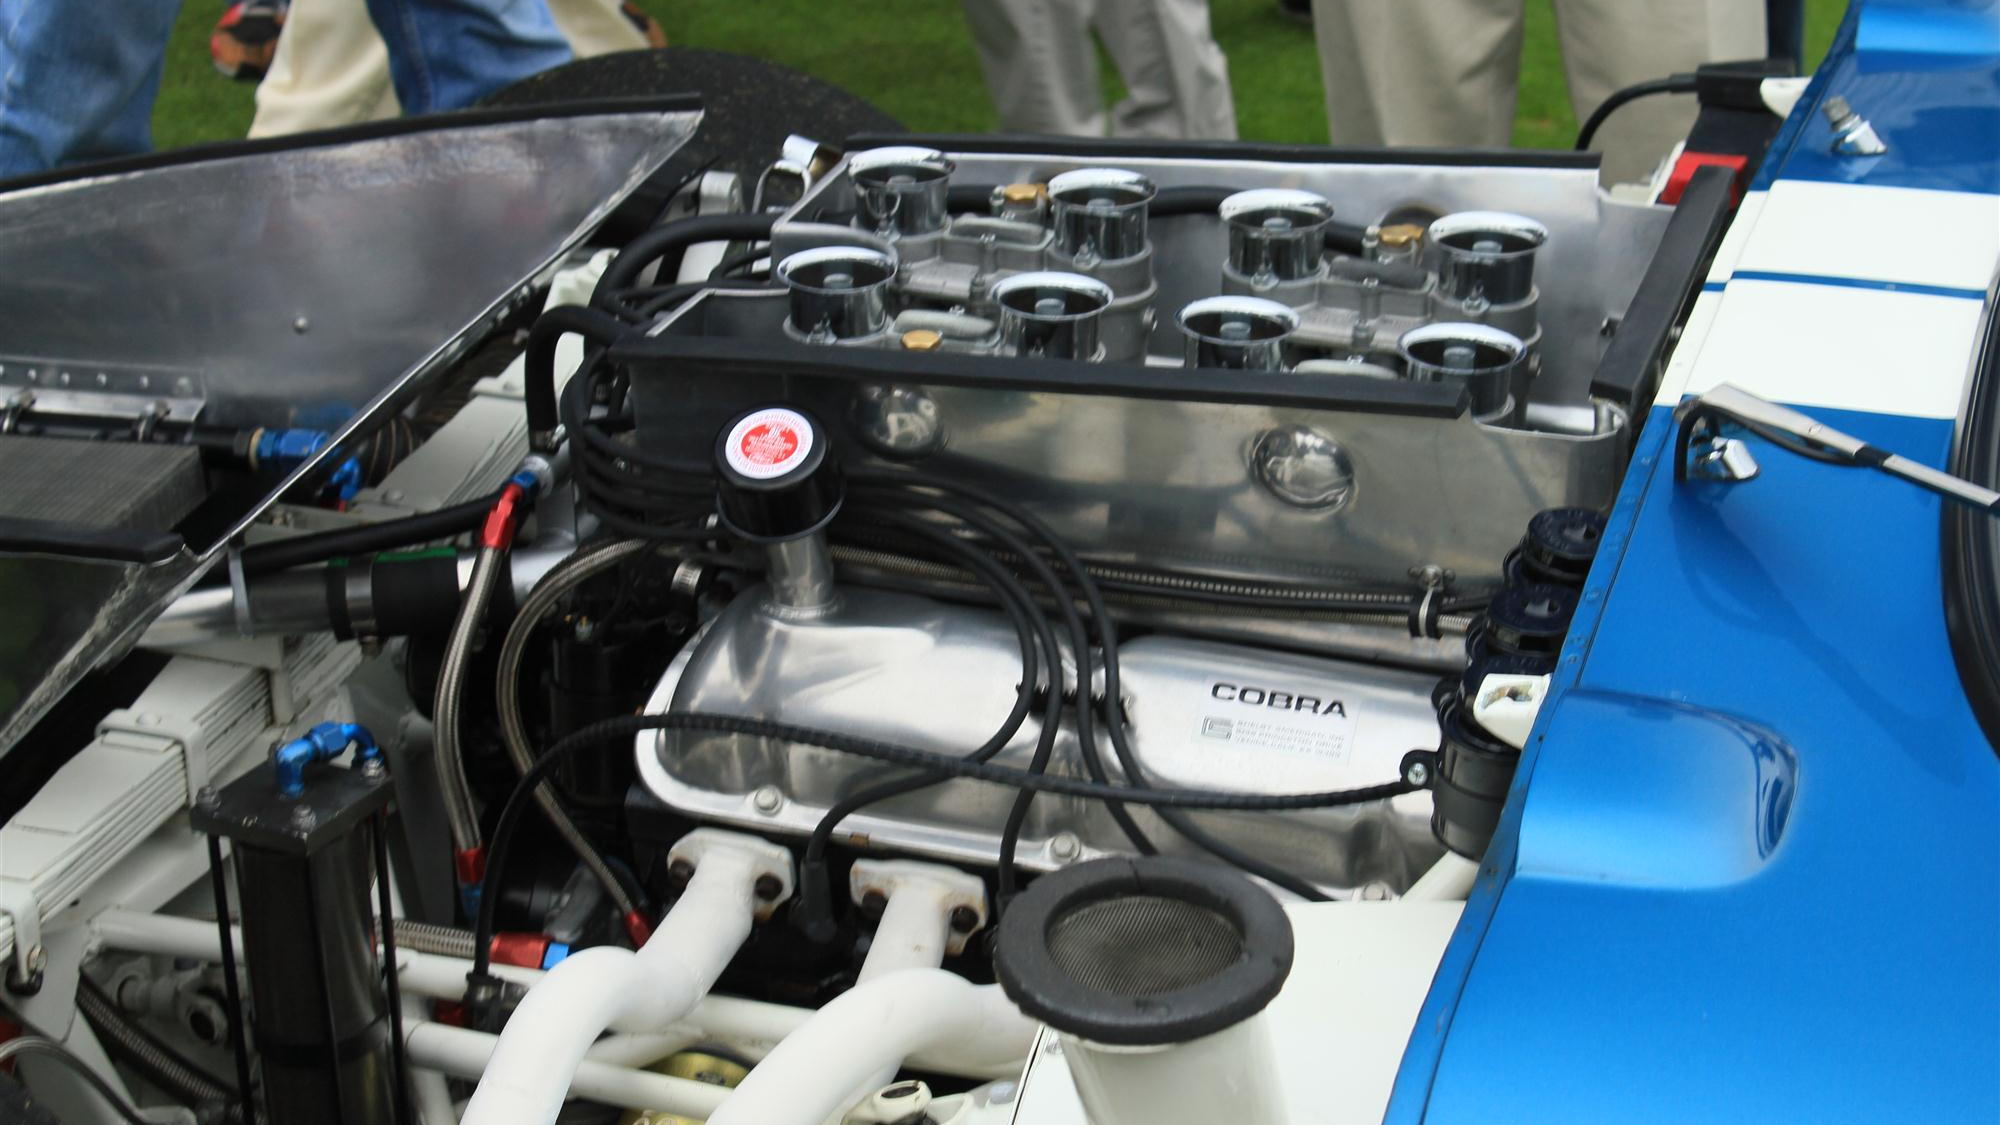 1965 Shelby Cobra Daytona Coupe